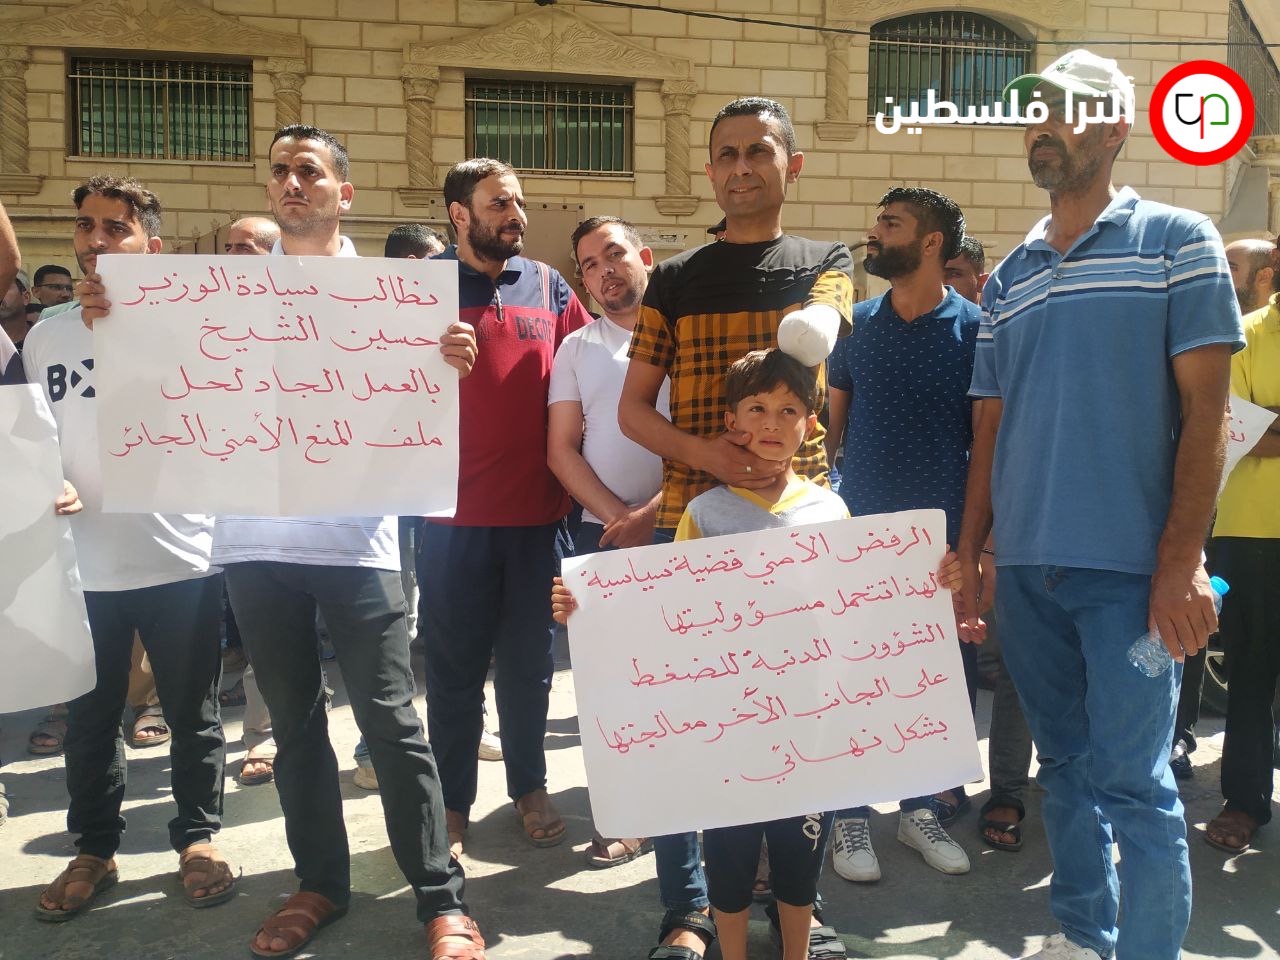 تظاهر مئات العمال في غزة، احتجاجًا على استمرار حرمانهم من الحصول على تصاريح عمل داخل الخط الأخضر، بسبب "المنع الأمني" 